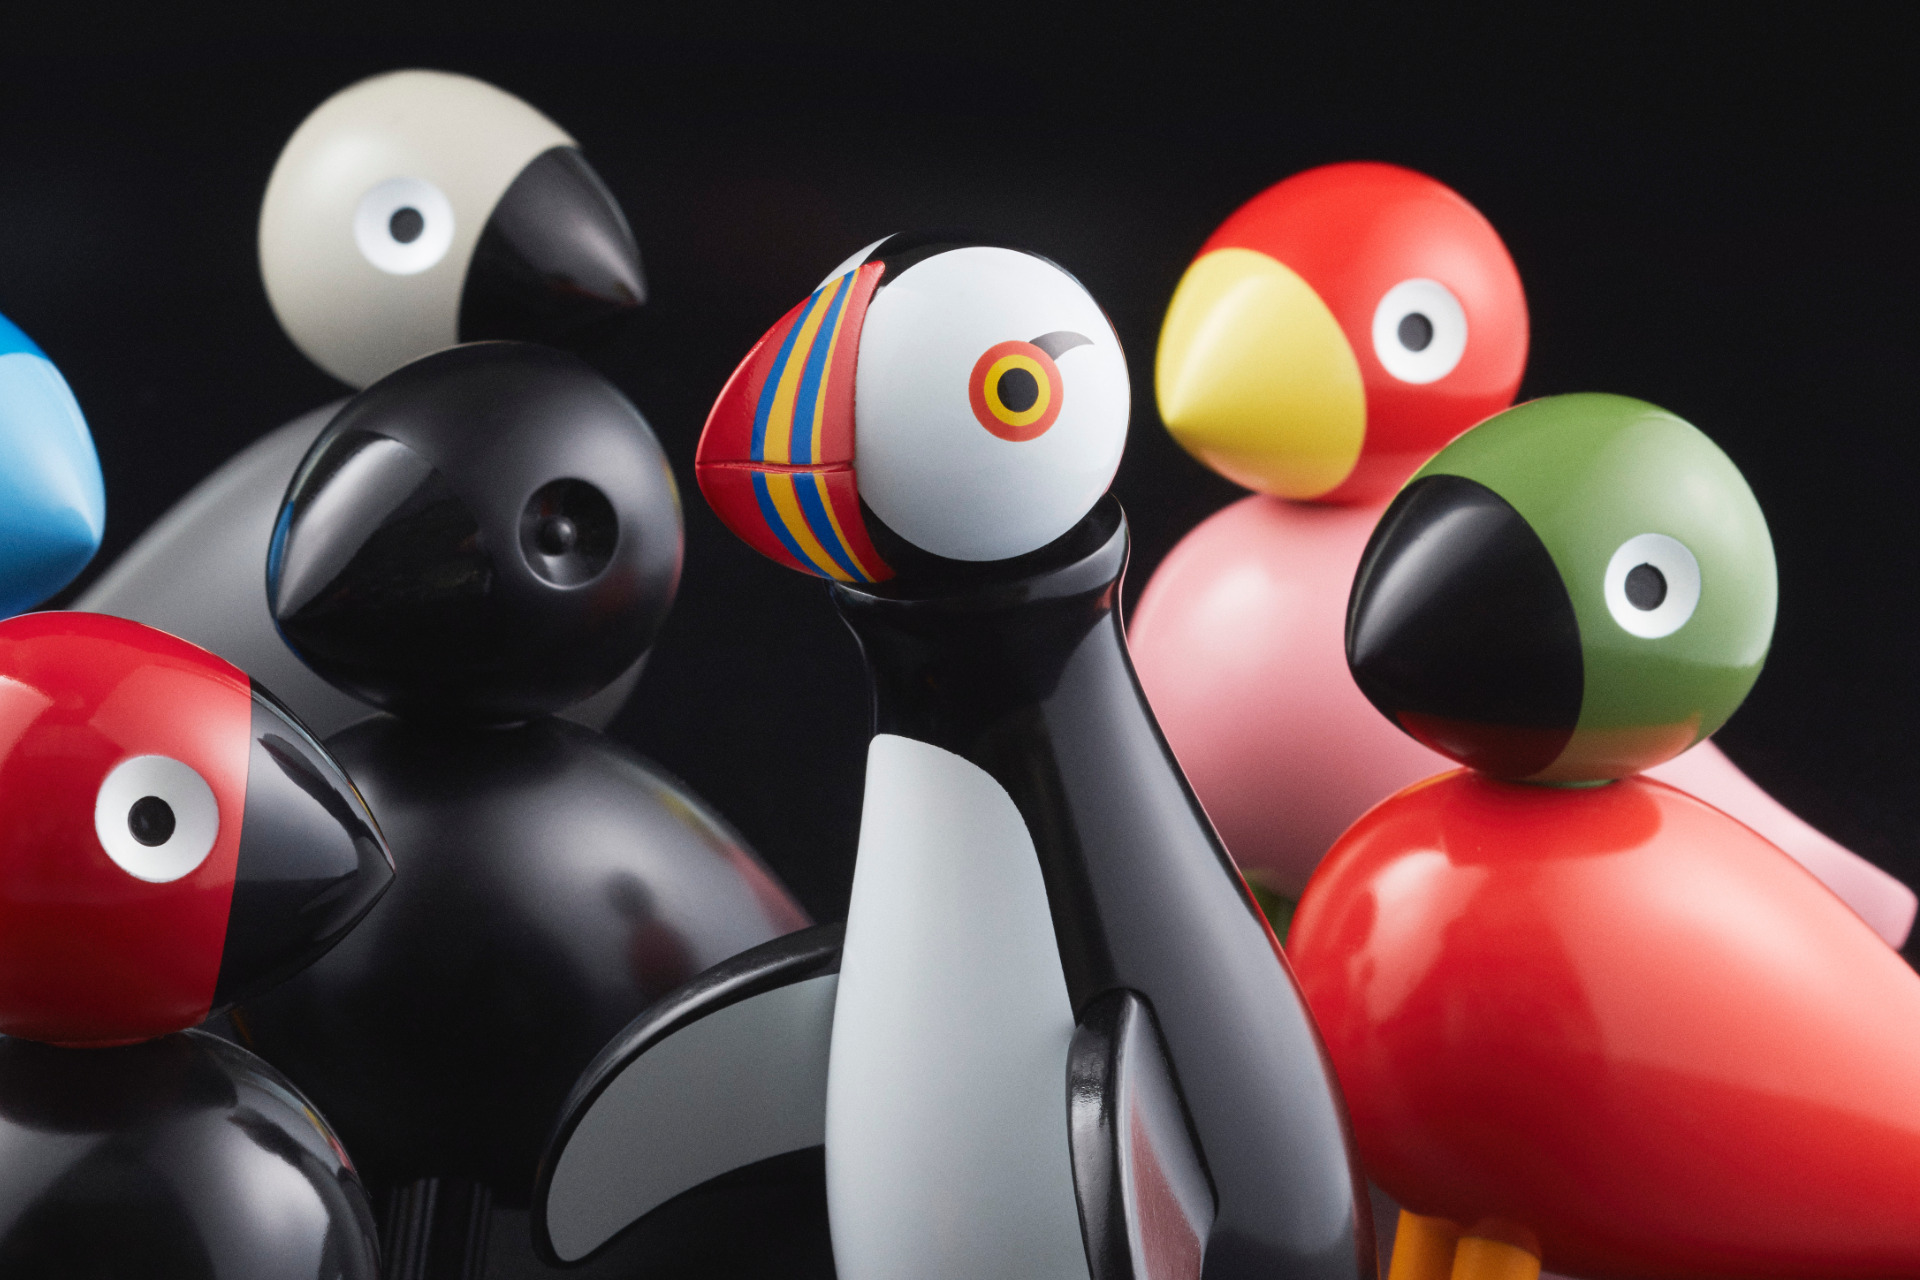 Verschiedene bunte Vögel, entworfen von Kay Bojesen mit dem Papagei in der Mitte